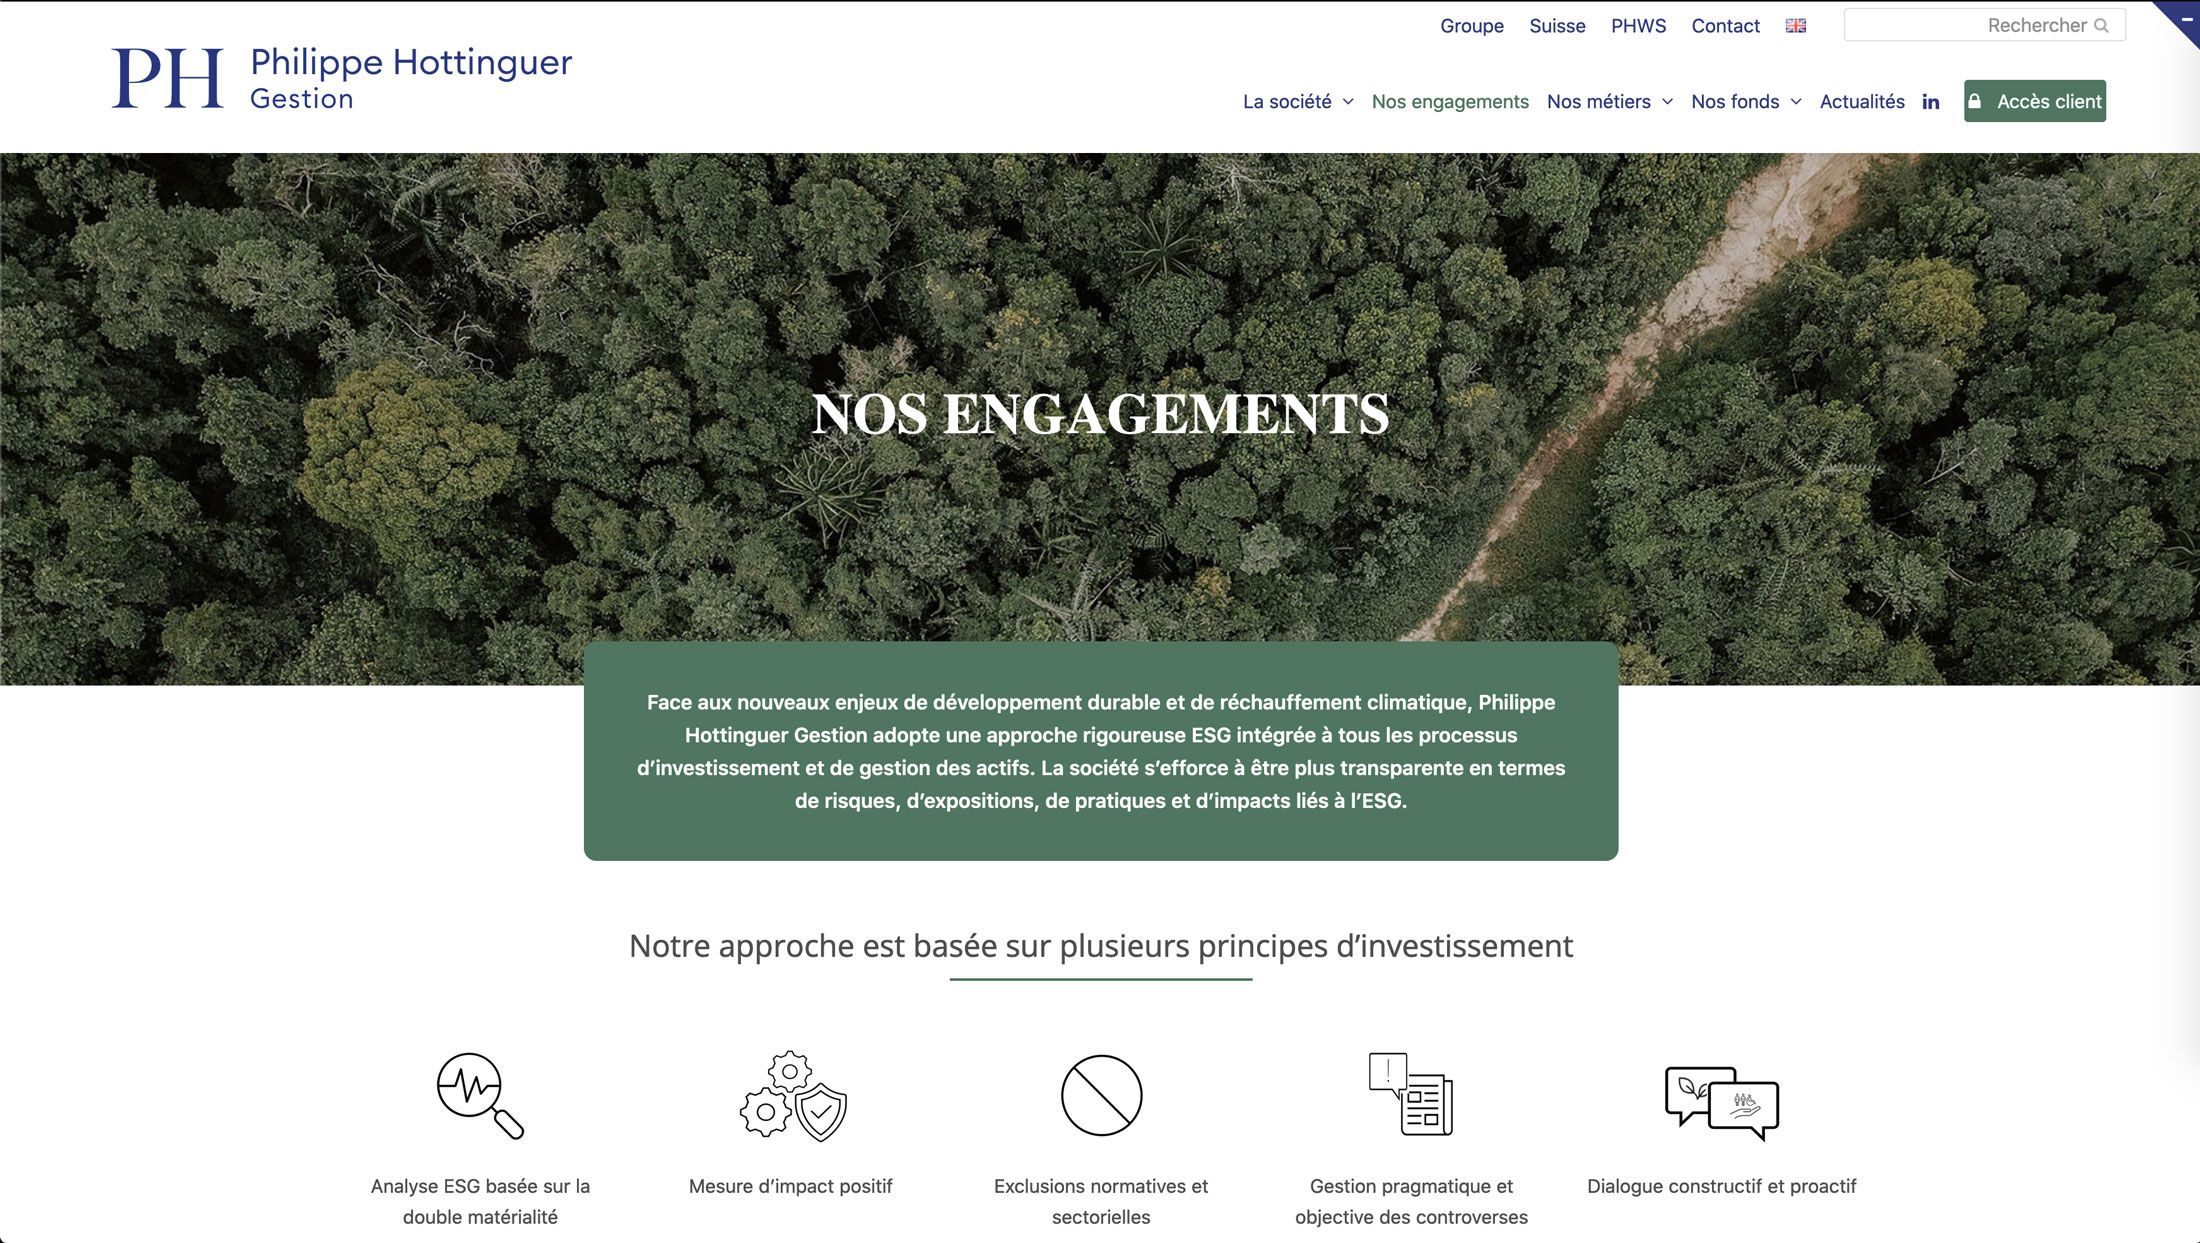 Image du site web réalisé par Nostromo, agence de communication, pour Philippe Hottinguer Group